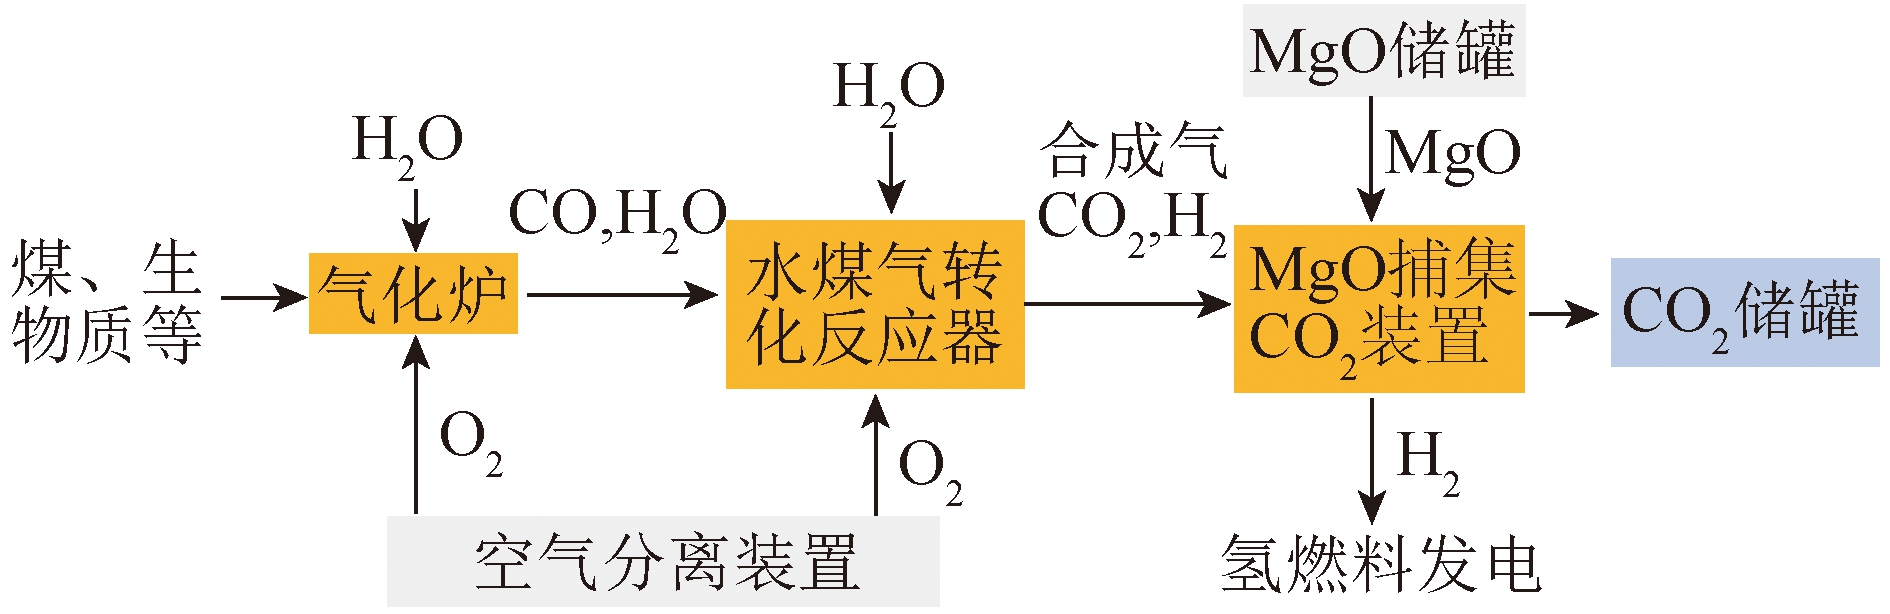 MgO吸附剂捕集CO2的研究进展